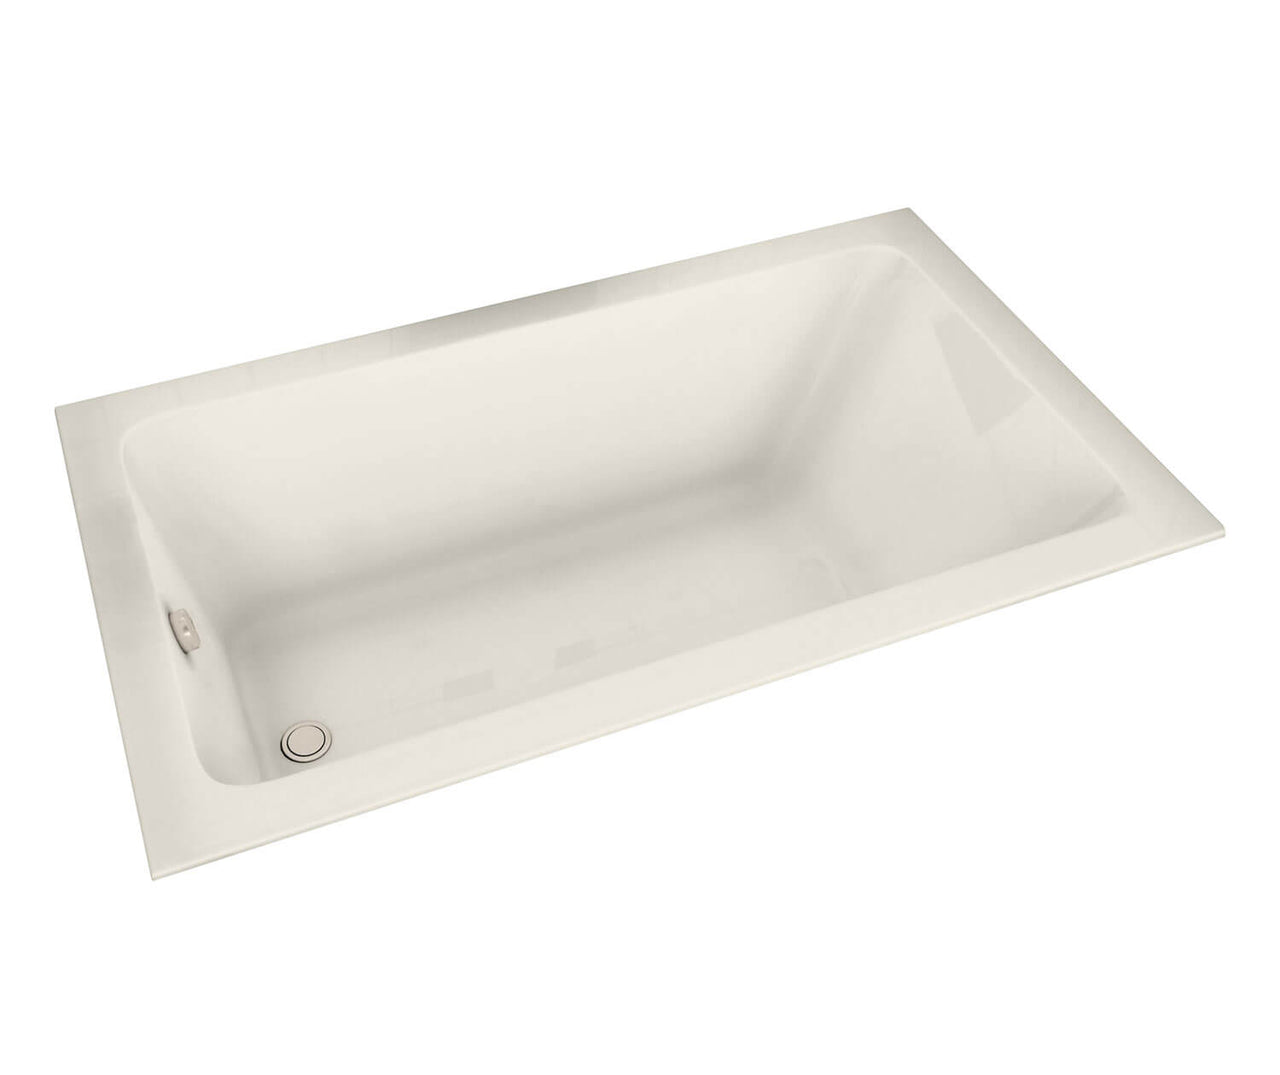 Pose 6032 Acrylic Drop-in Bathtub - BNGBath